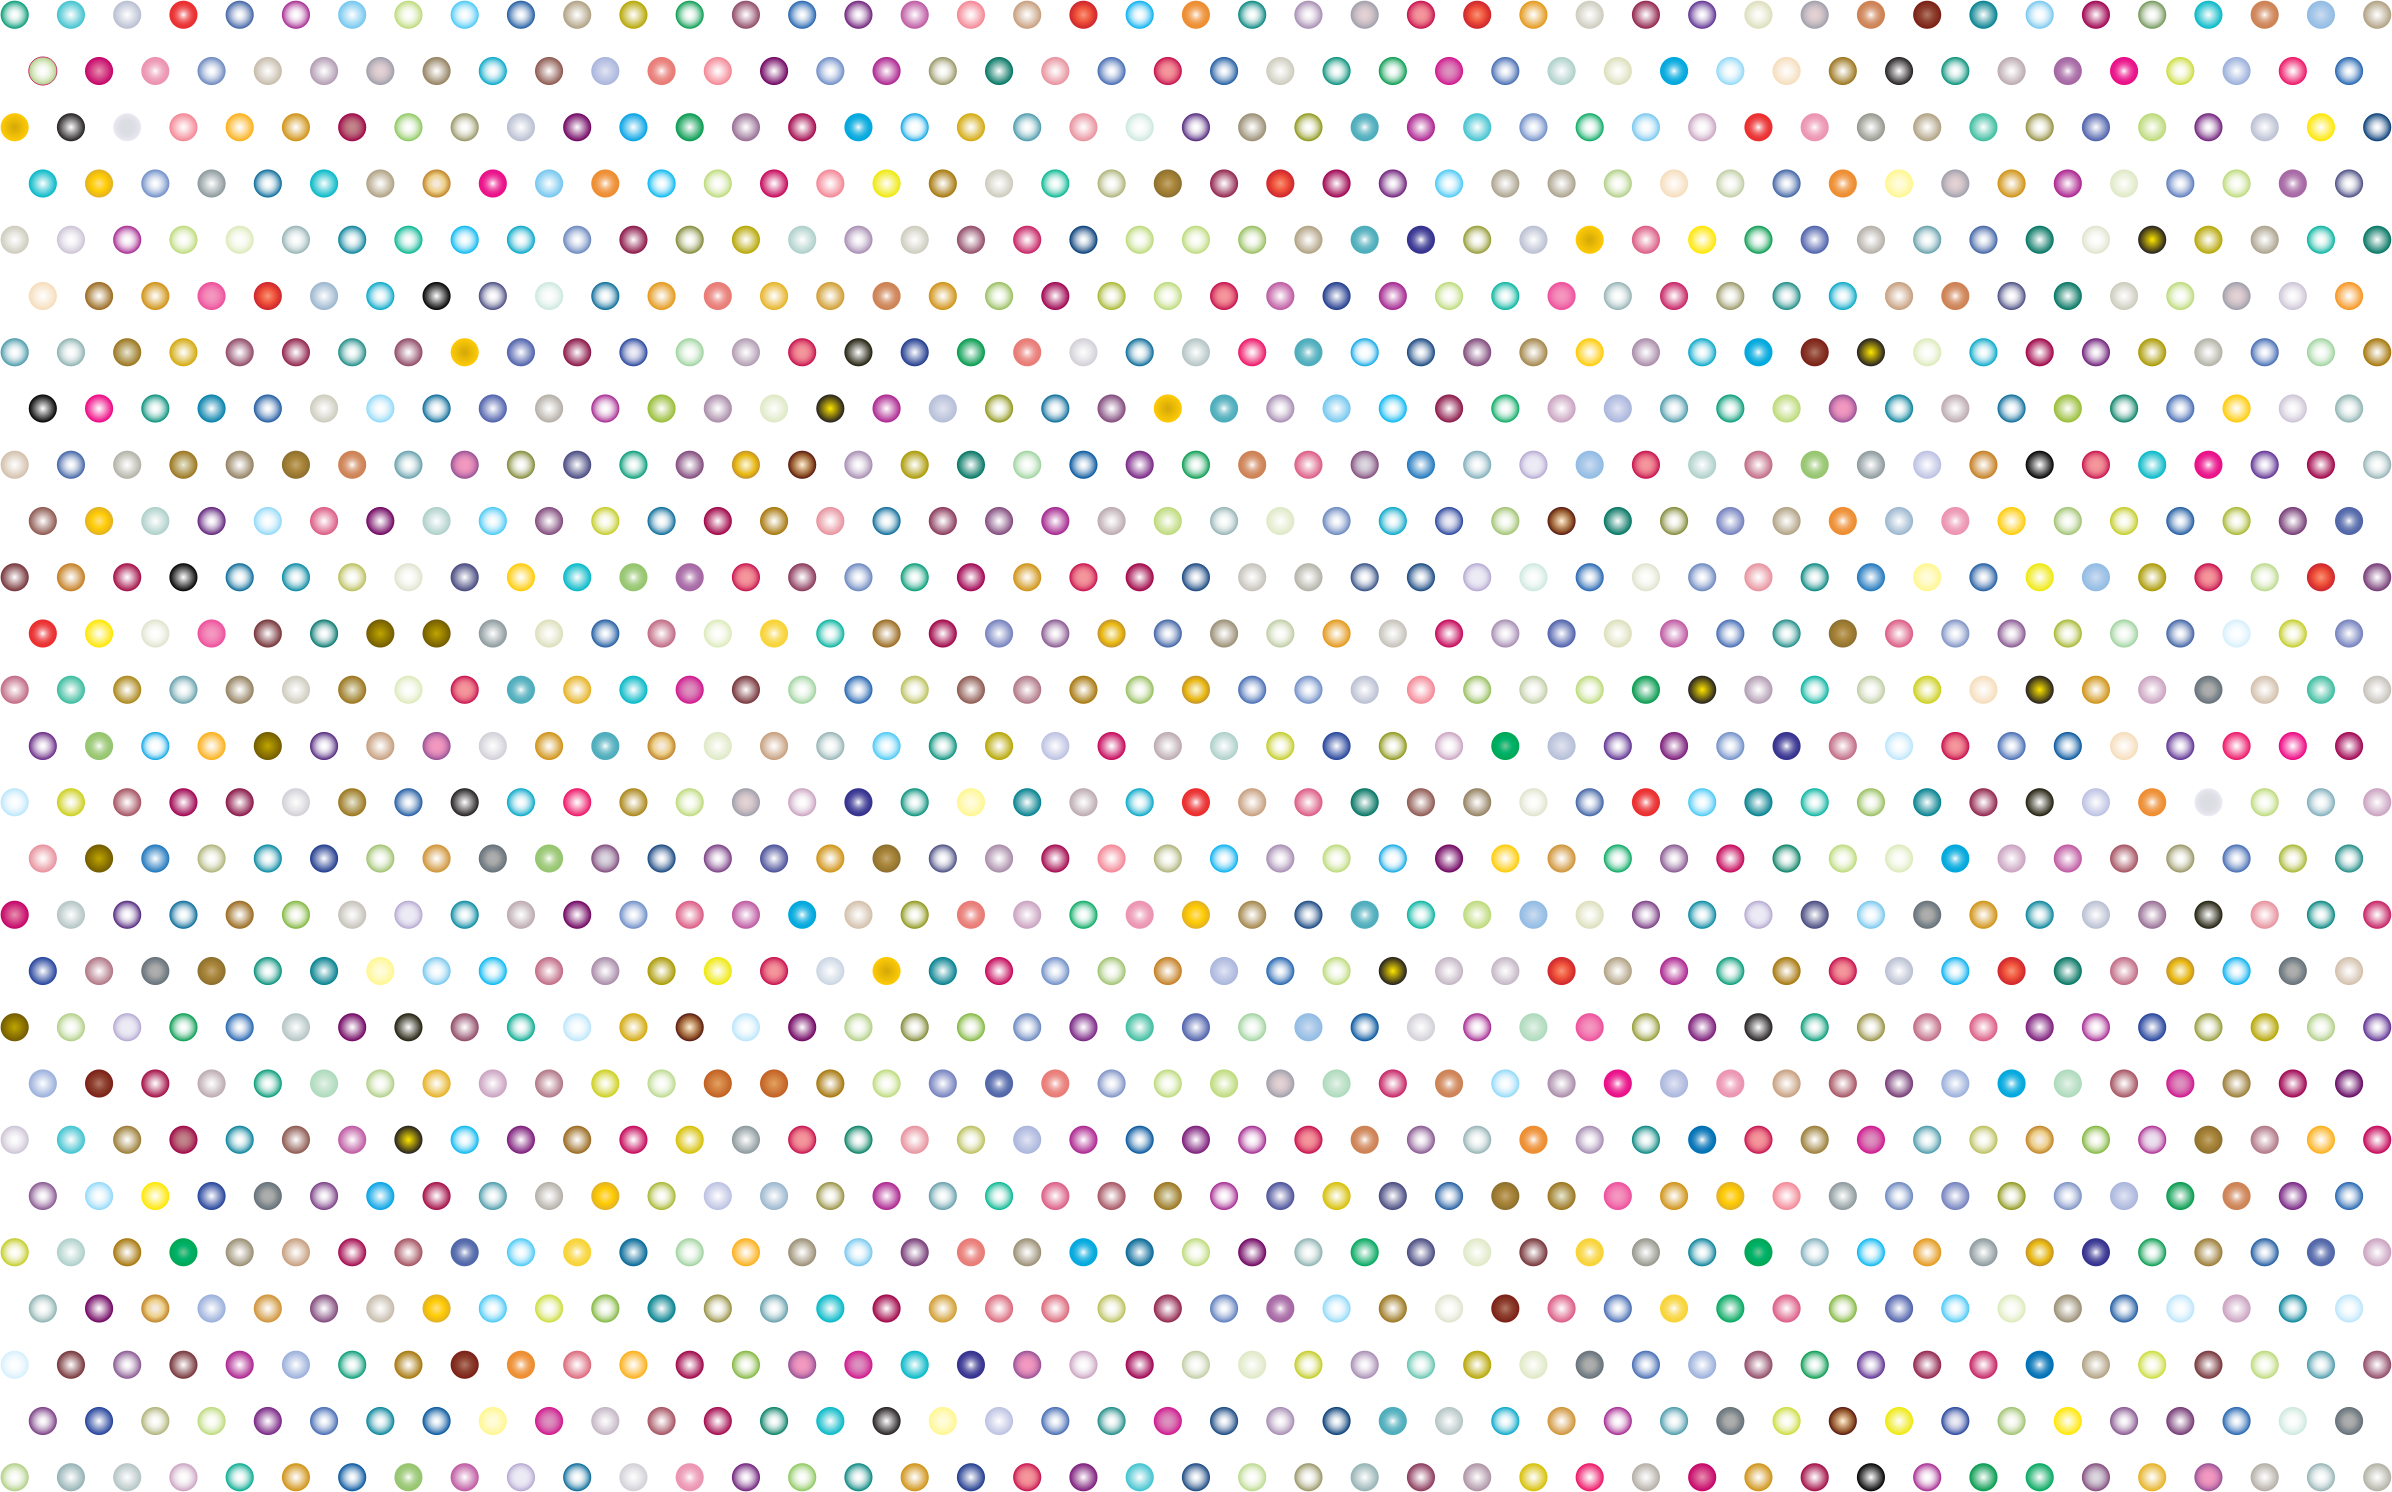 Polka Dot Background Png Transparent Polka Dot Background